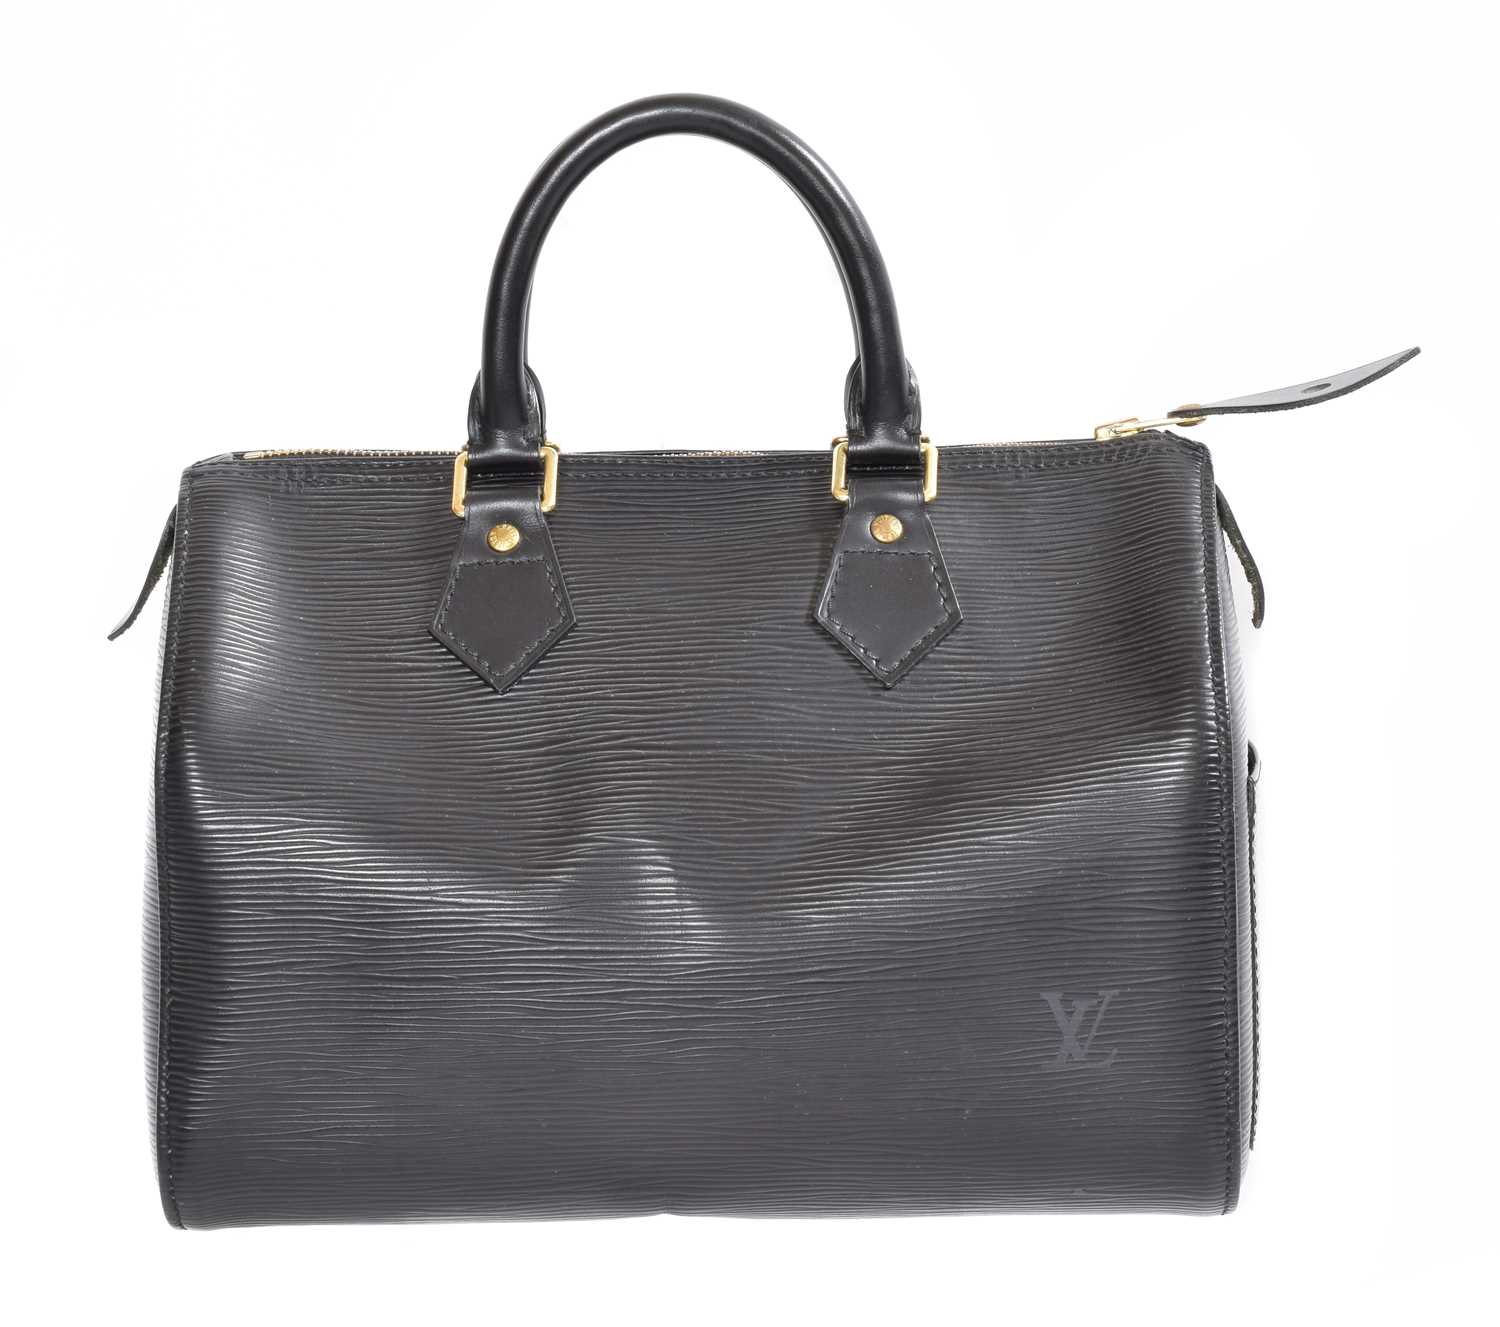 Lot 132 - A Louis Vuitton Epi Speedy 25 handbag